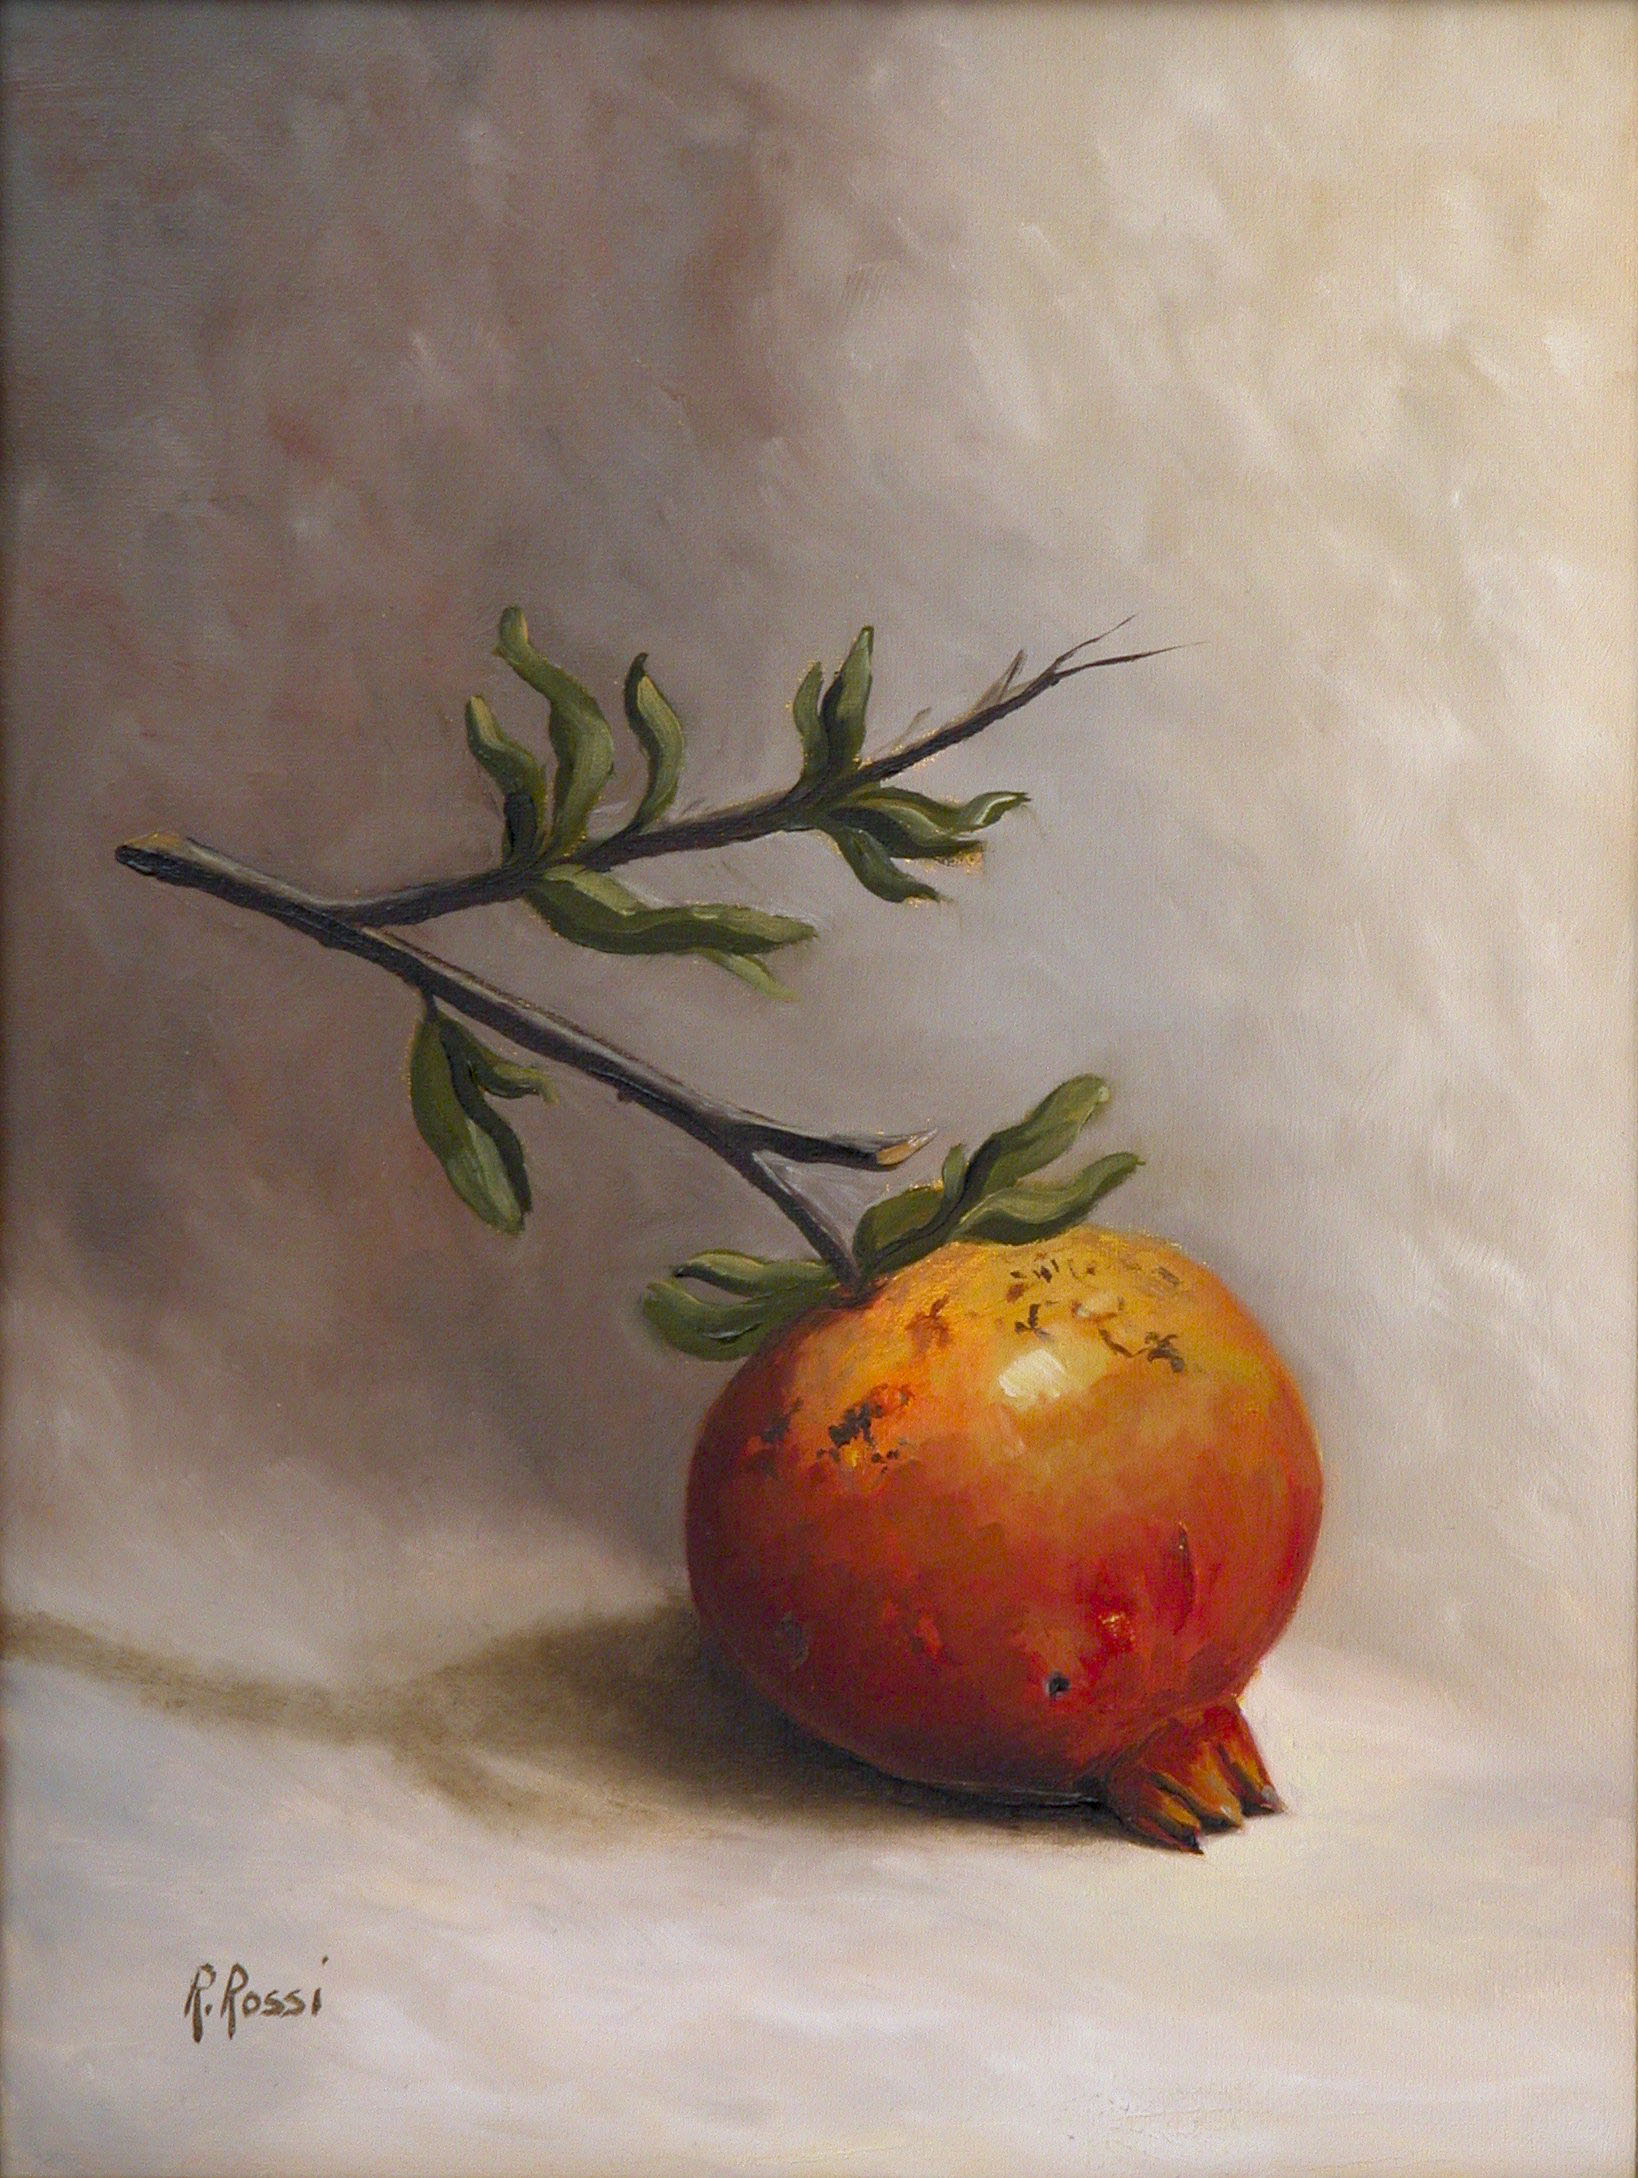 2008 roberta rossi – Piccolo Melograno 2 – olio su tela – 24 x 18